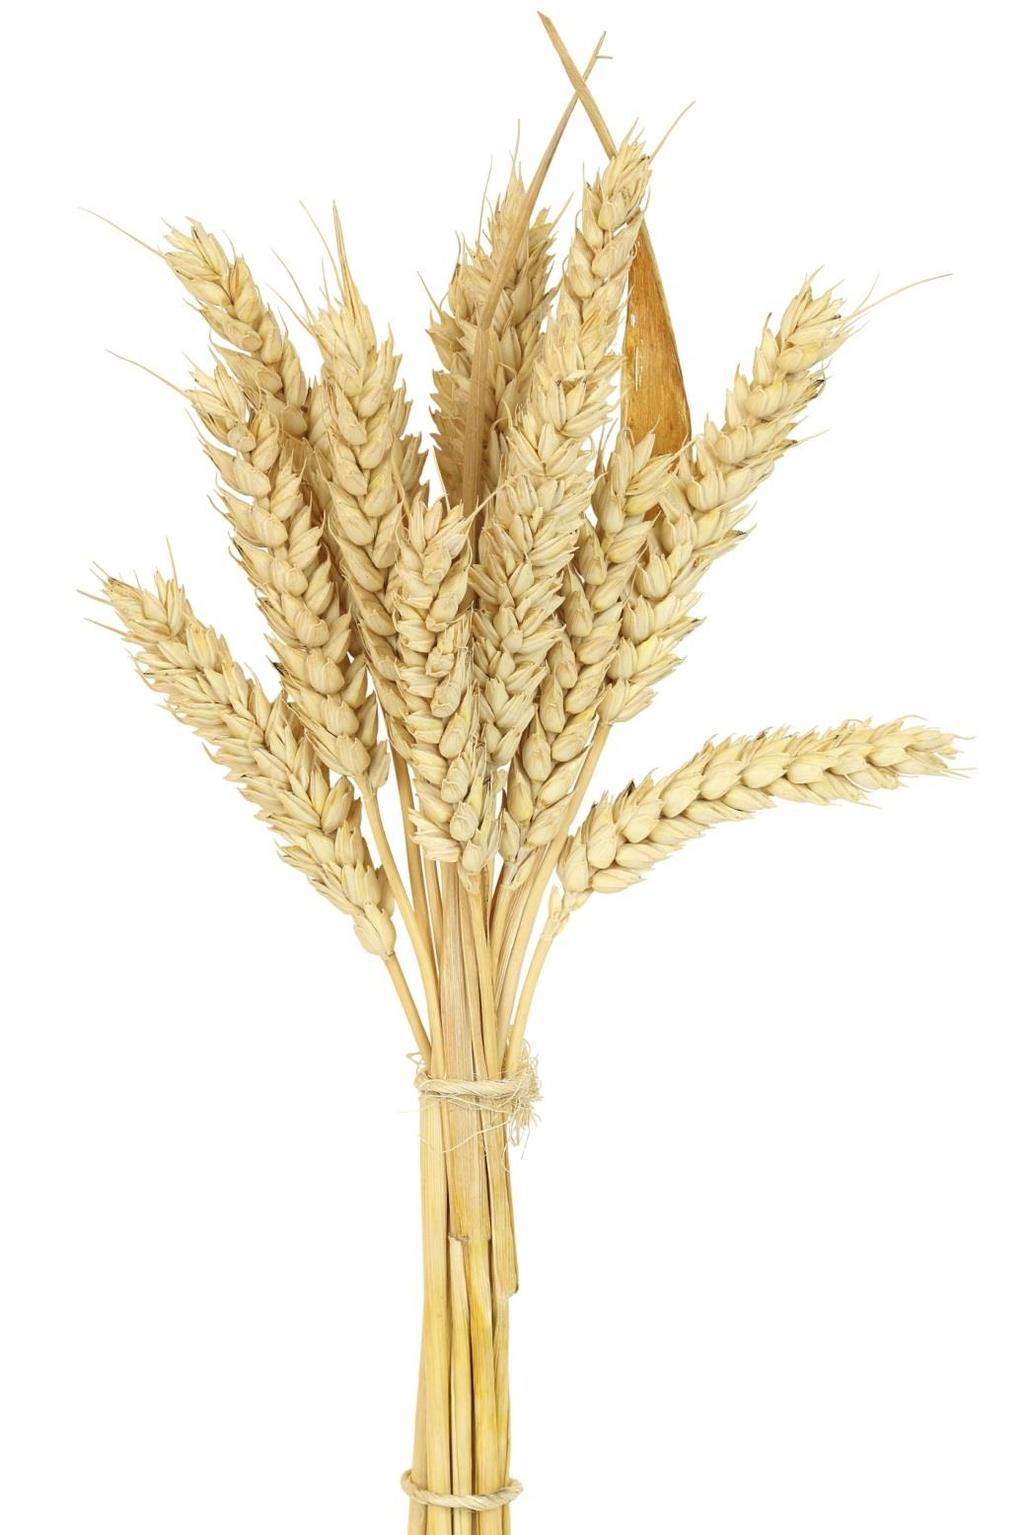 Wheat Grains Galore Lesson Plans *